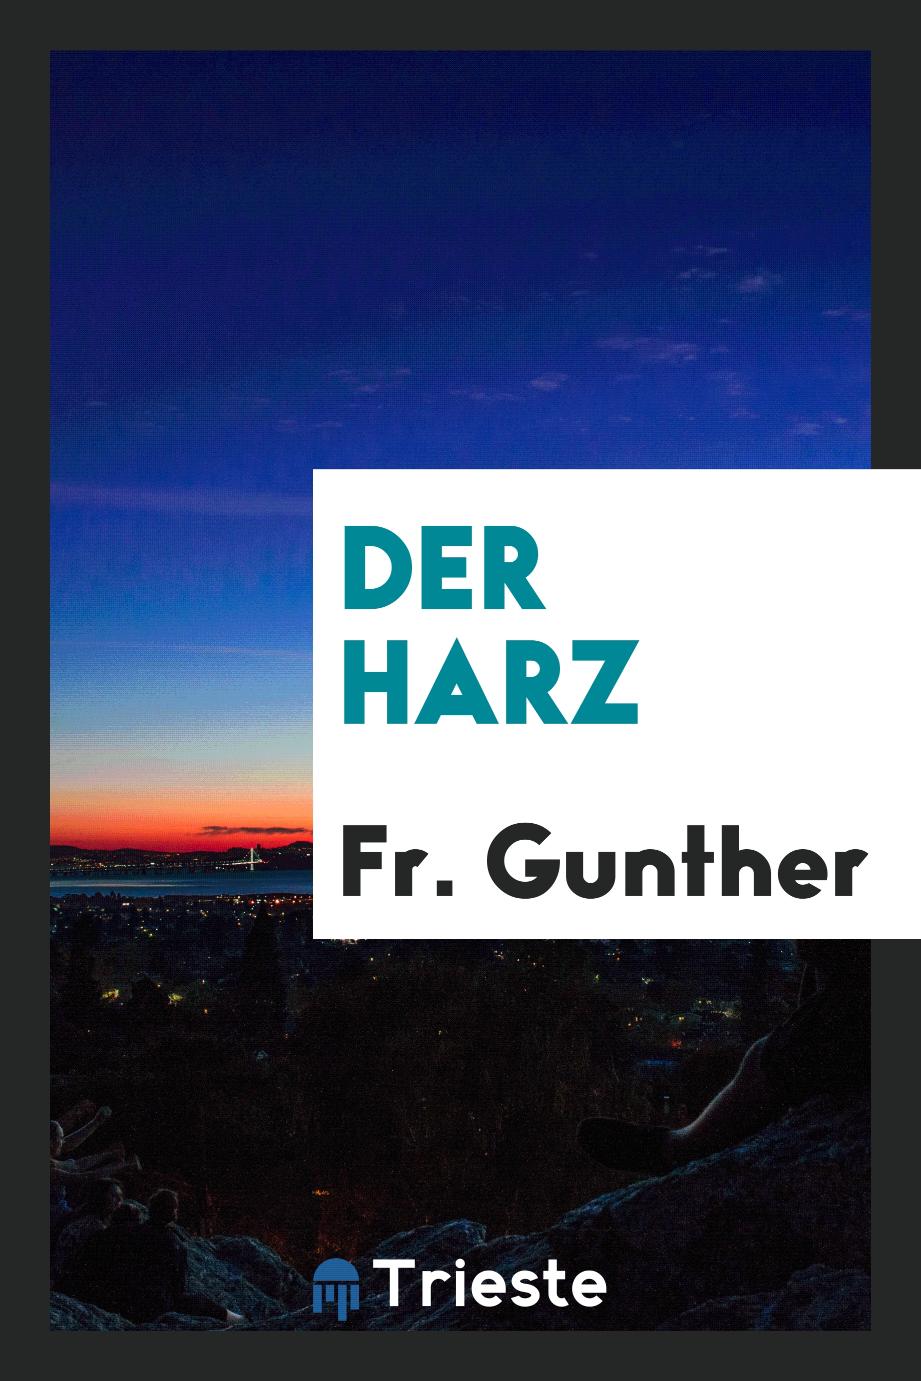 Fr. Gunther - Der Harz